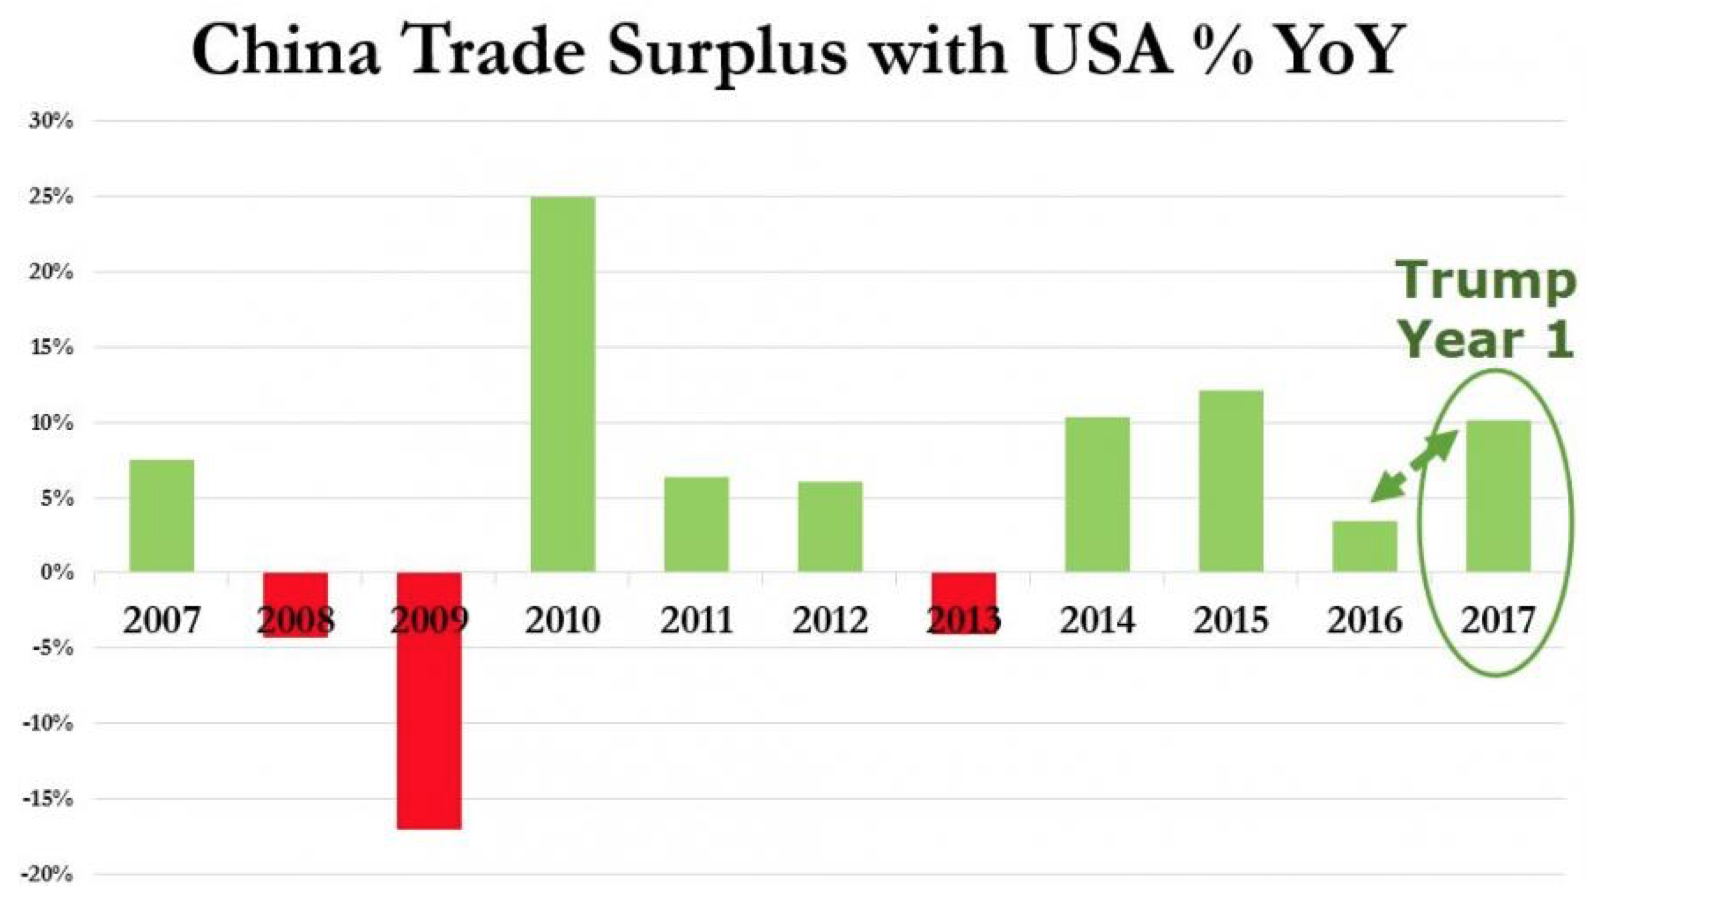 China trade surplus with USA